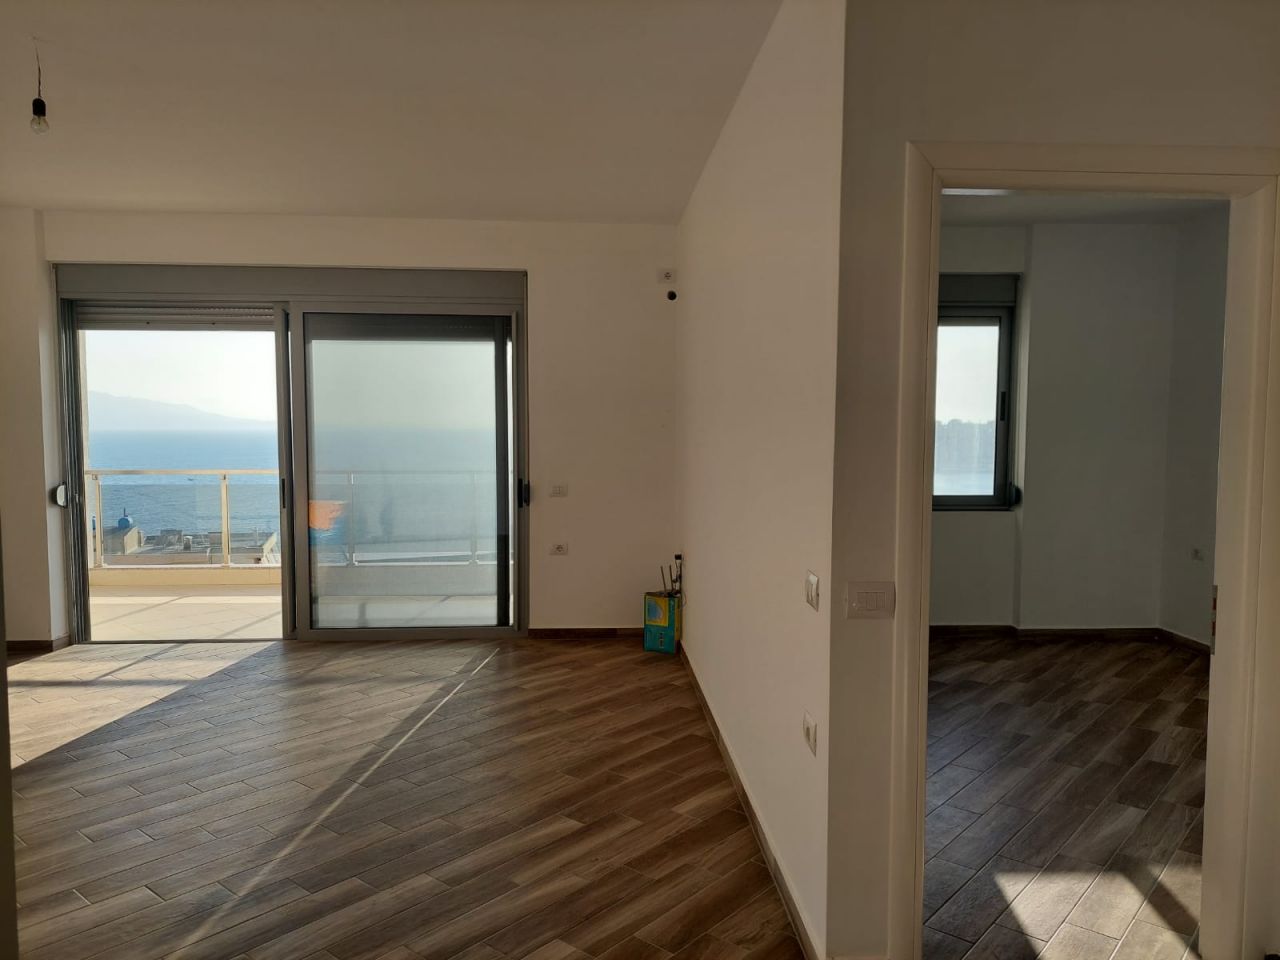 Apartamenty w Albanii na sprzedaż w pięknej miejscowości Saranda obok Morza Jońskiego.